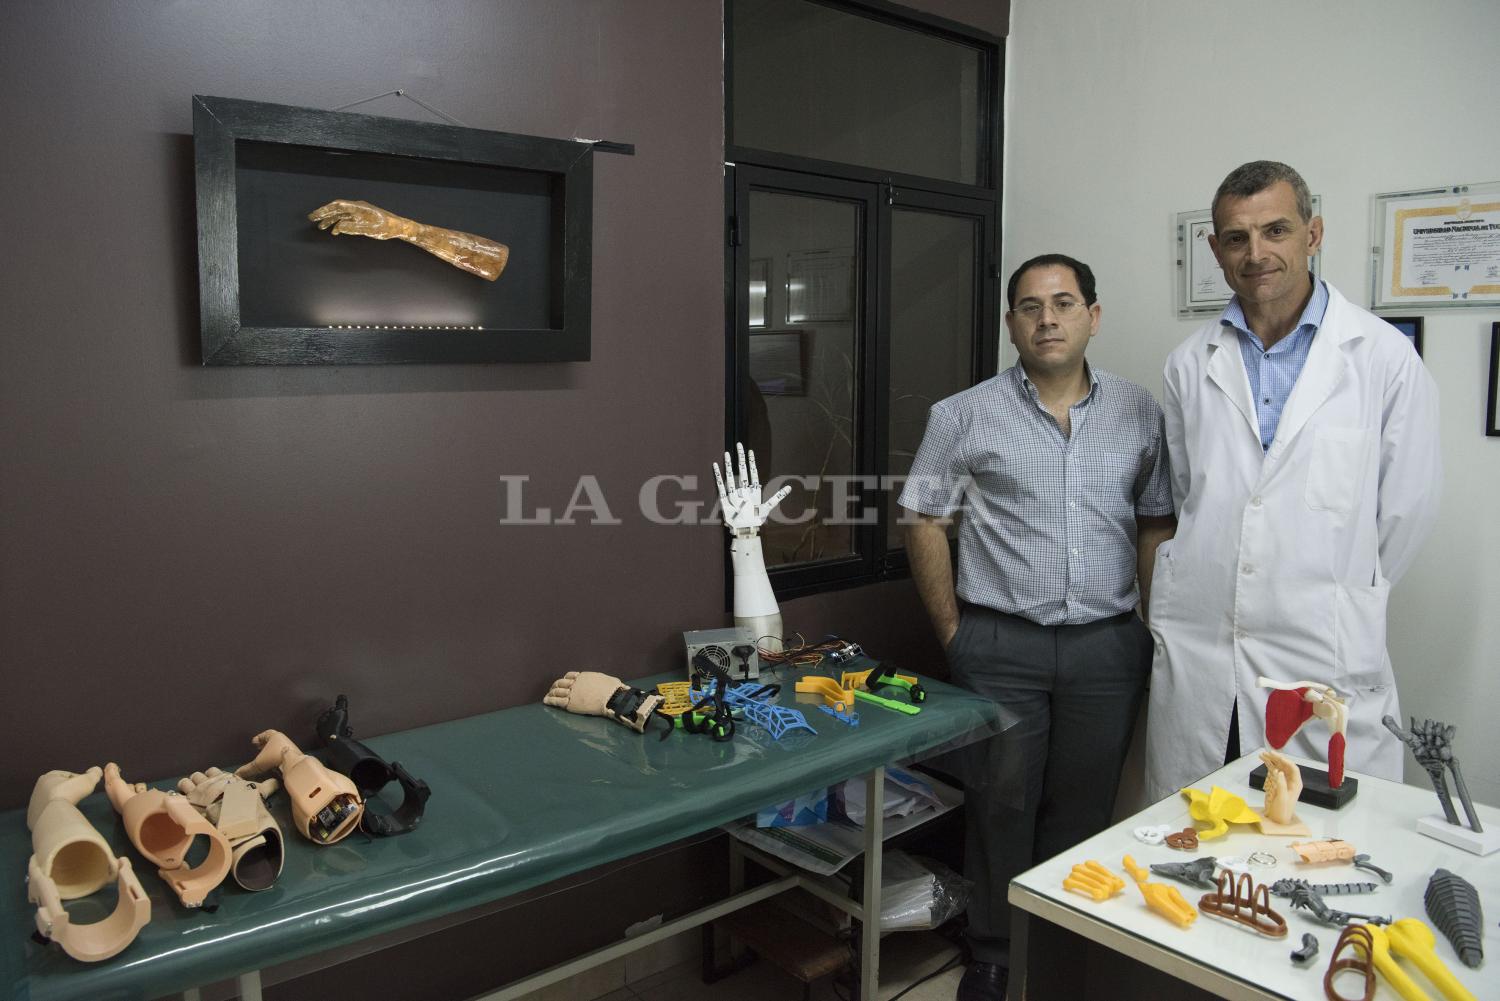 Lucas Dilascio y Claudio Brahim, dos cirujanos que aprendieron a imprimir en 3D con fines medicinales.